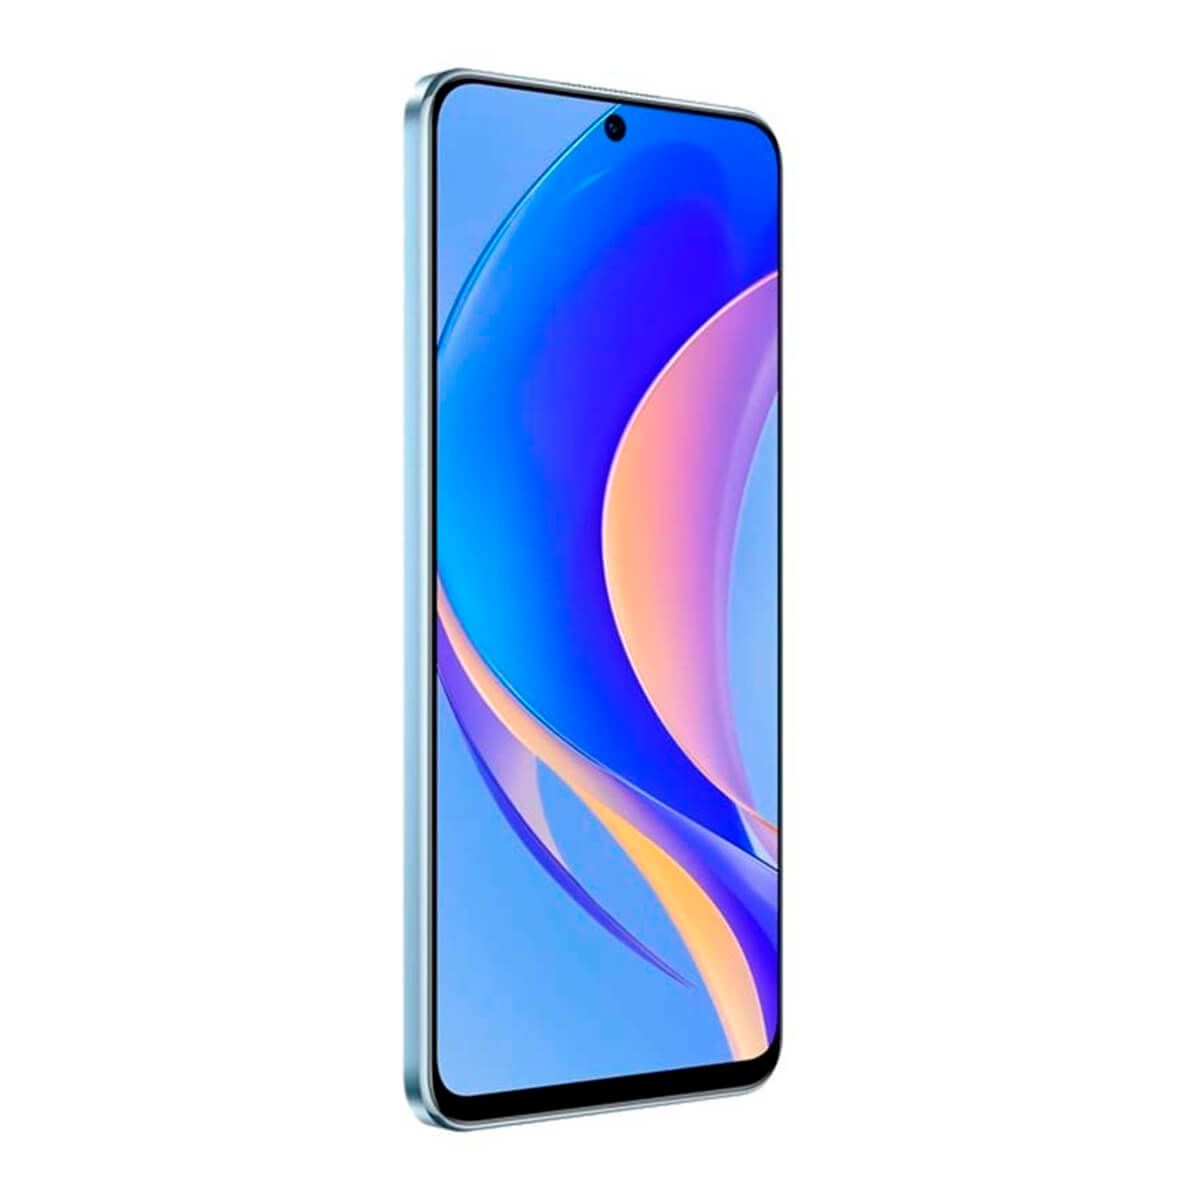 Huawei Nova Y90 6GB/128GB Blue (Crystal Blue) Dual SIM